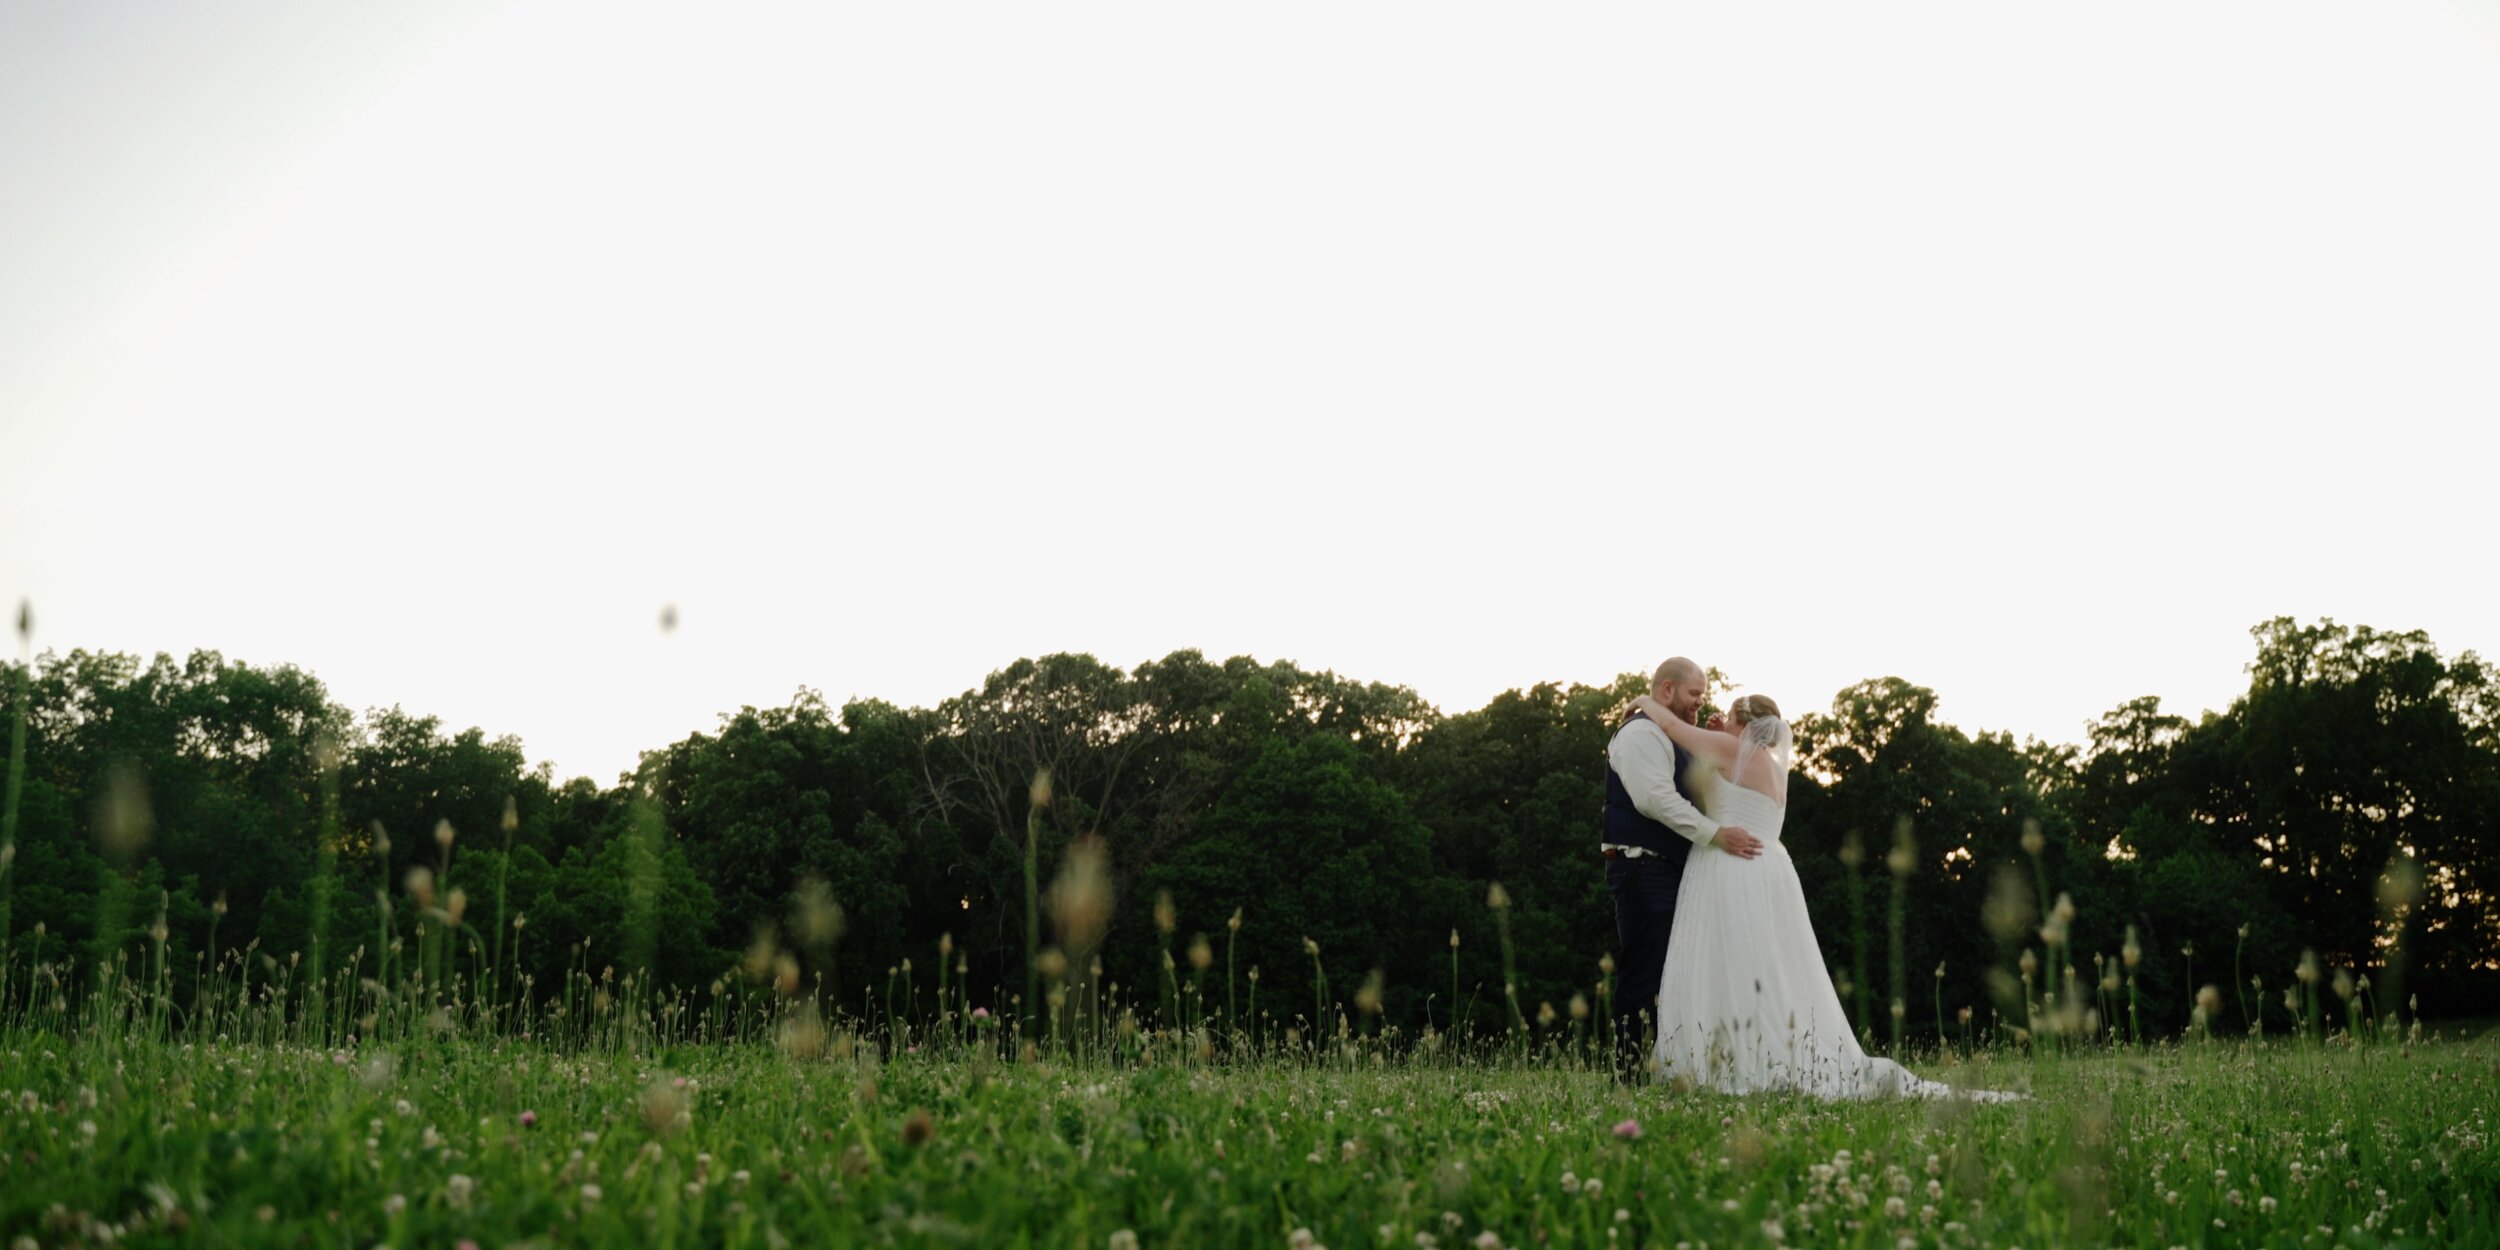 Lake Kincaid Bride and Groom Wedding Videography